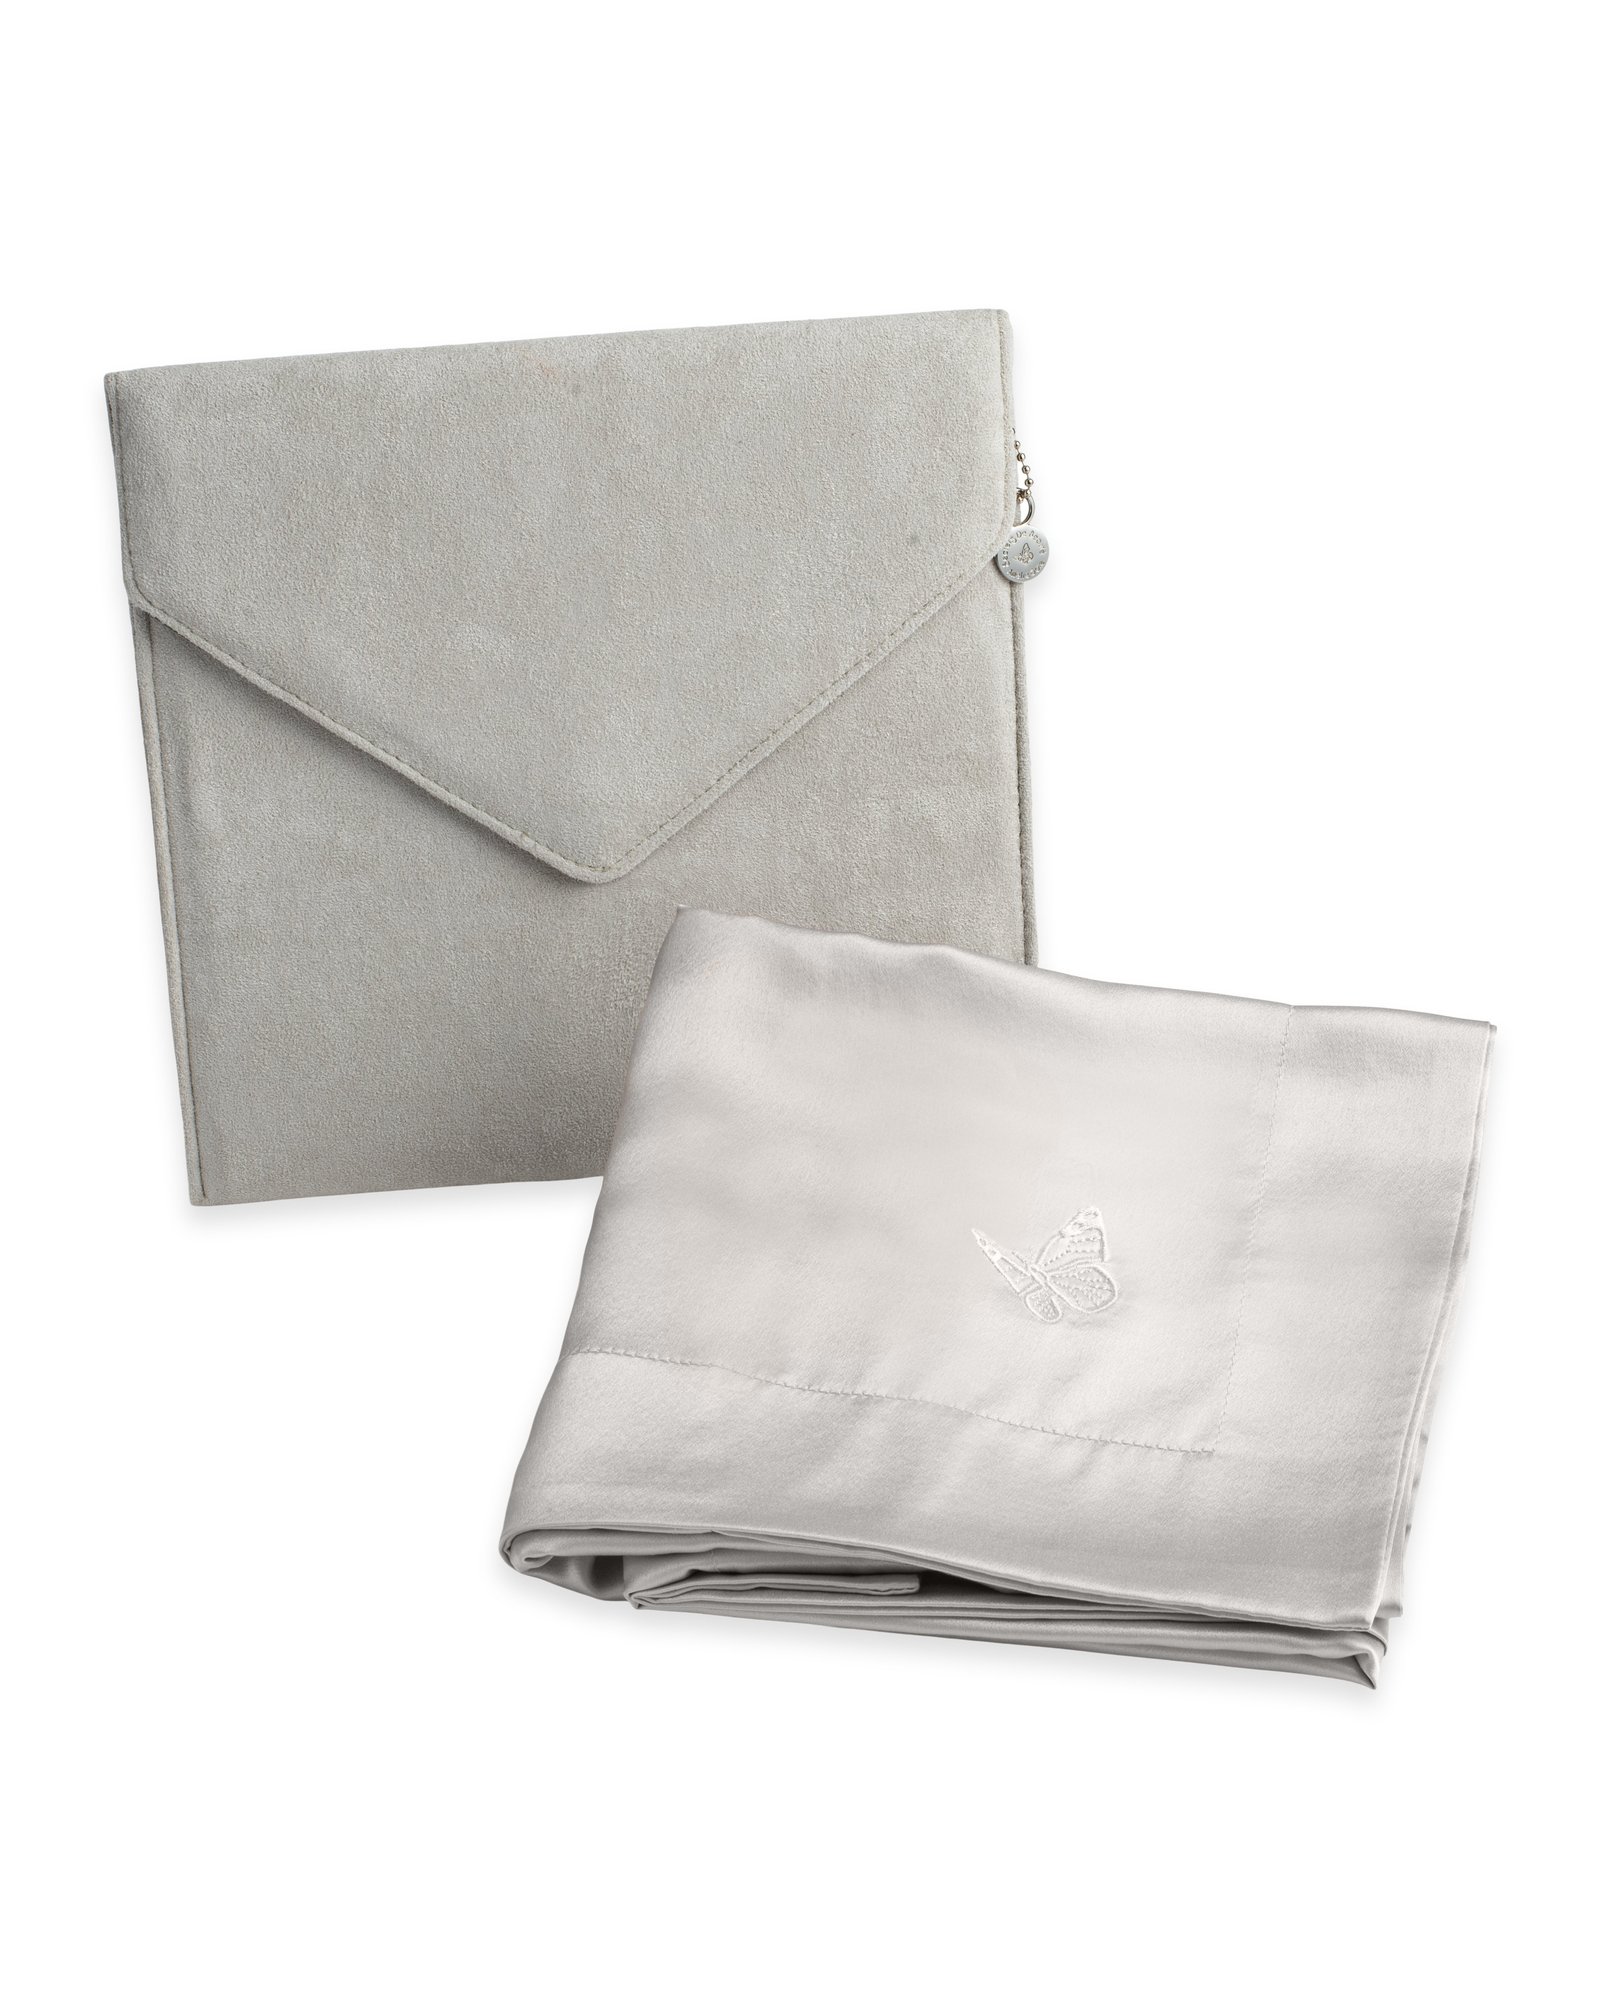 Amelie Soie Beauty Silk Pillow Case Grey 50 x 60 cm 1 st